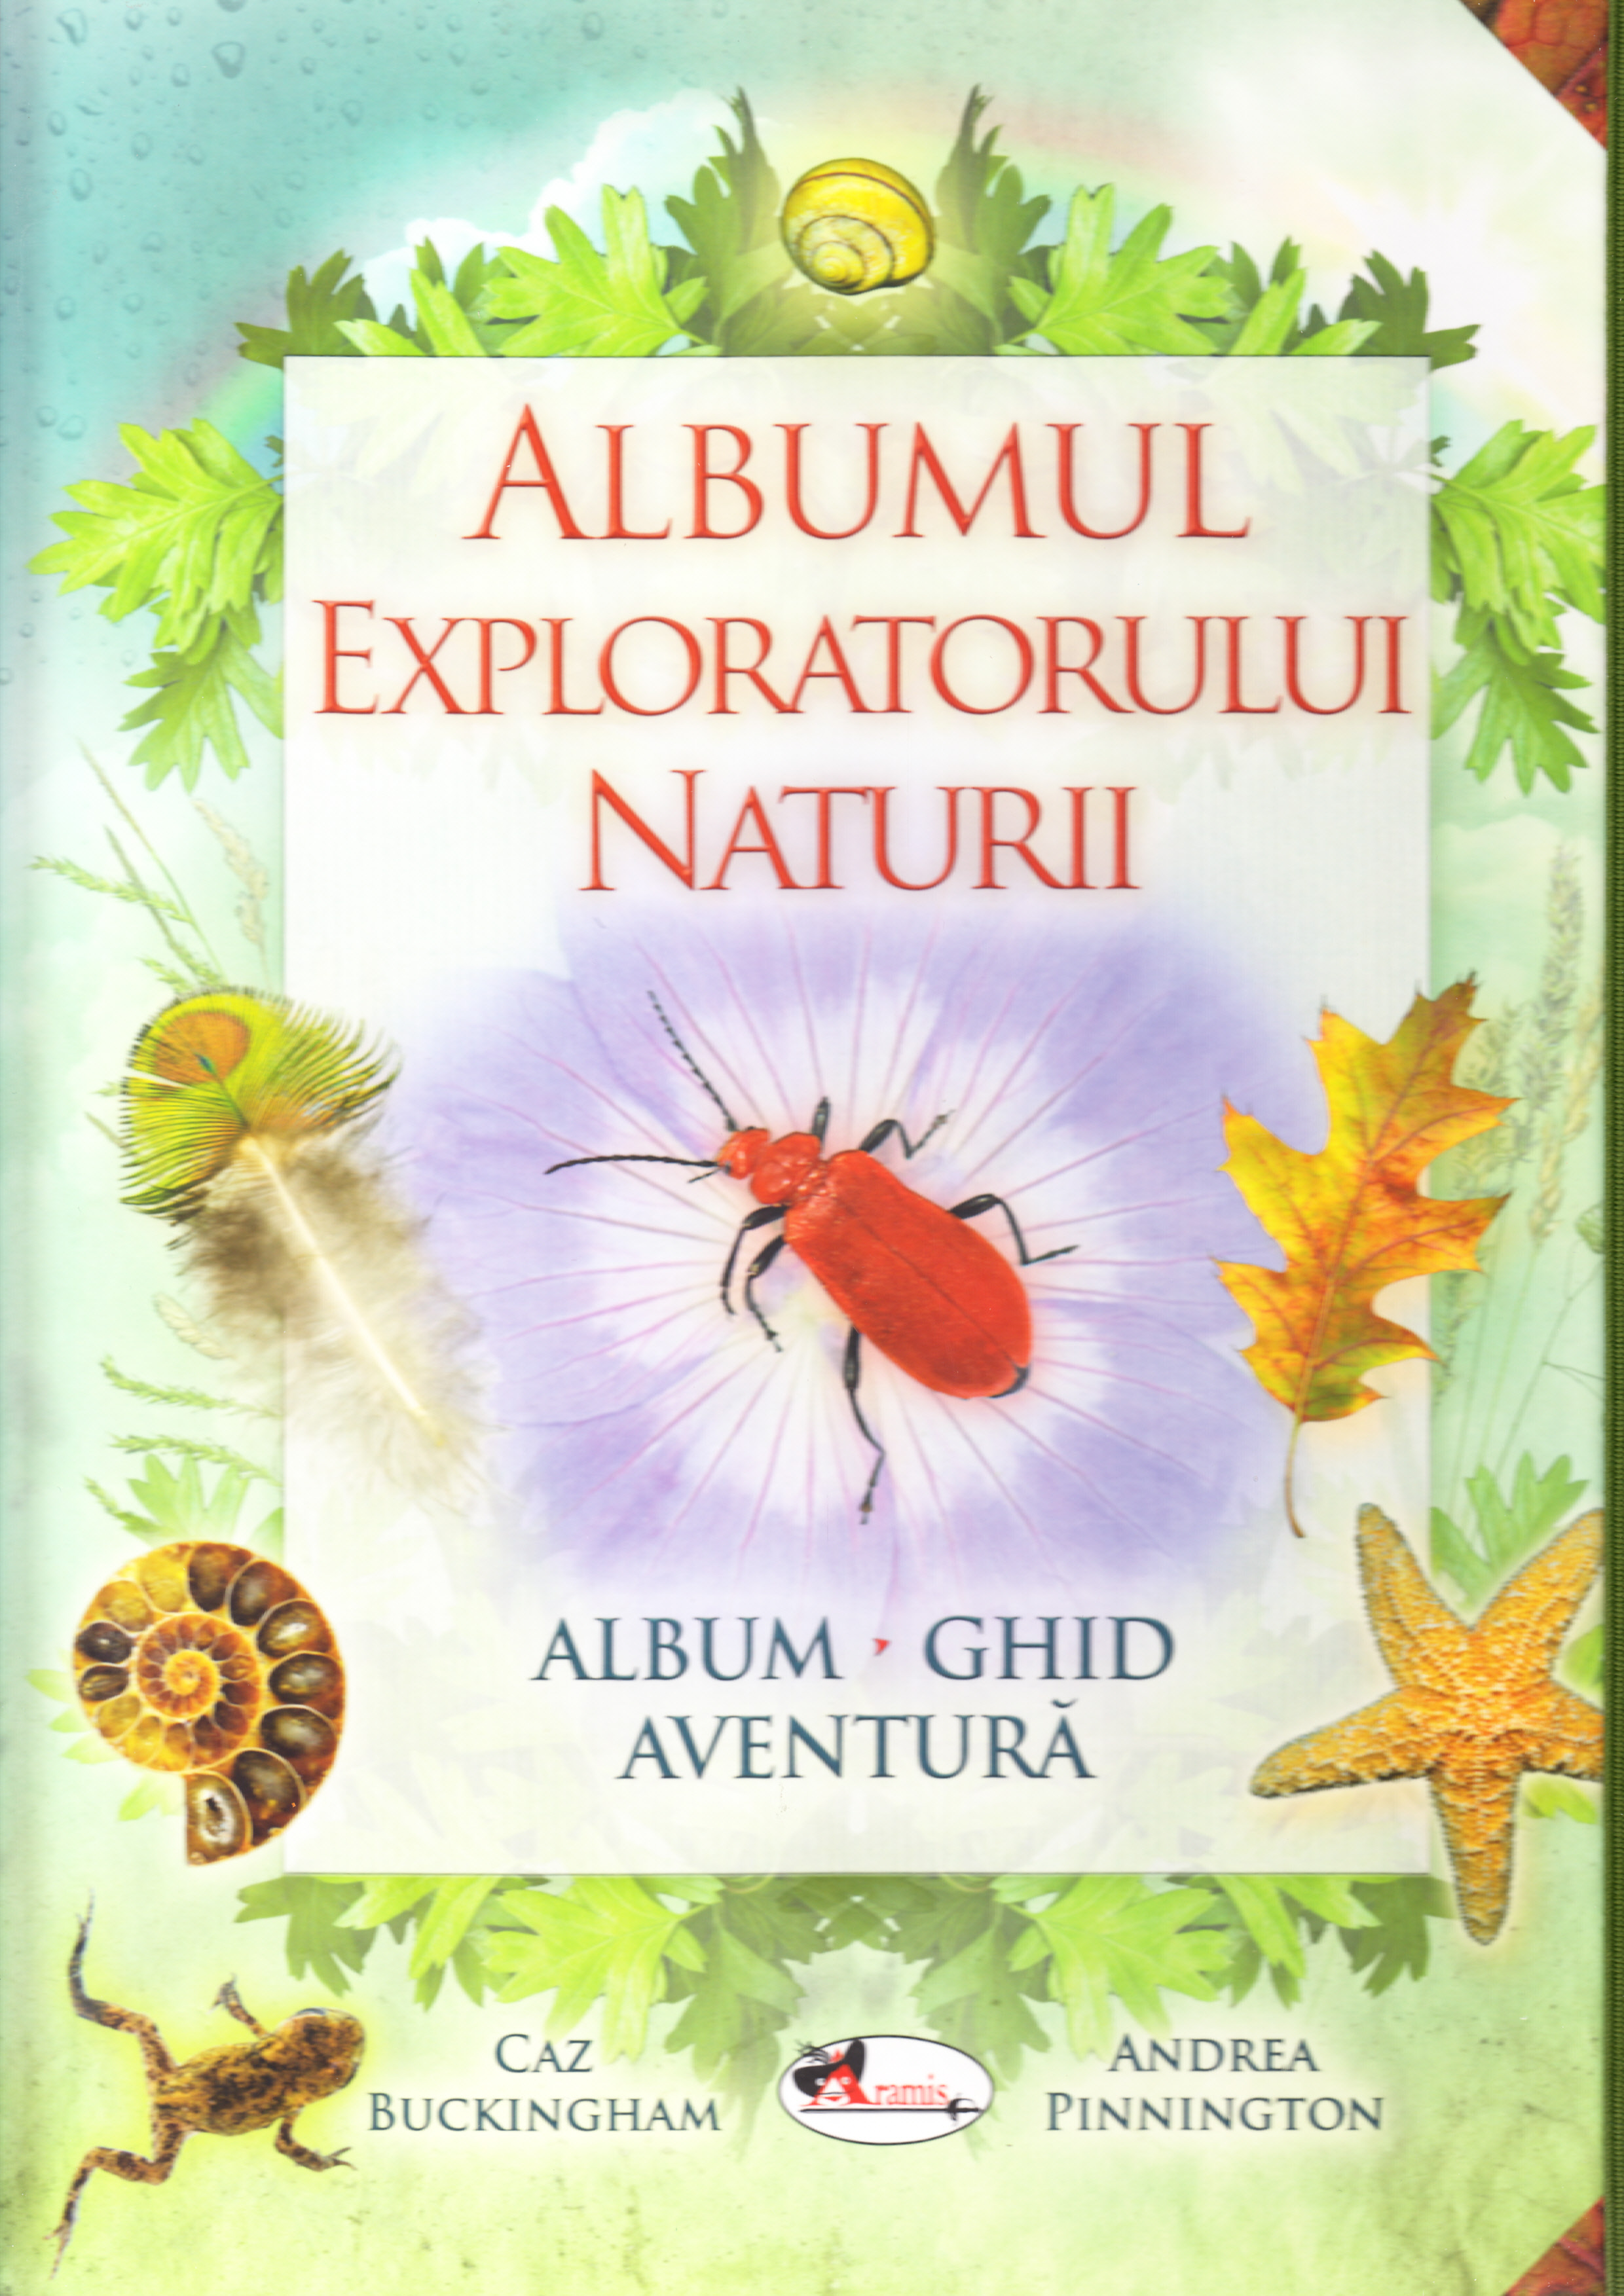 Albumul exploratorului naturii - Caz Buckinkham, Andrea Pinnington